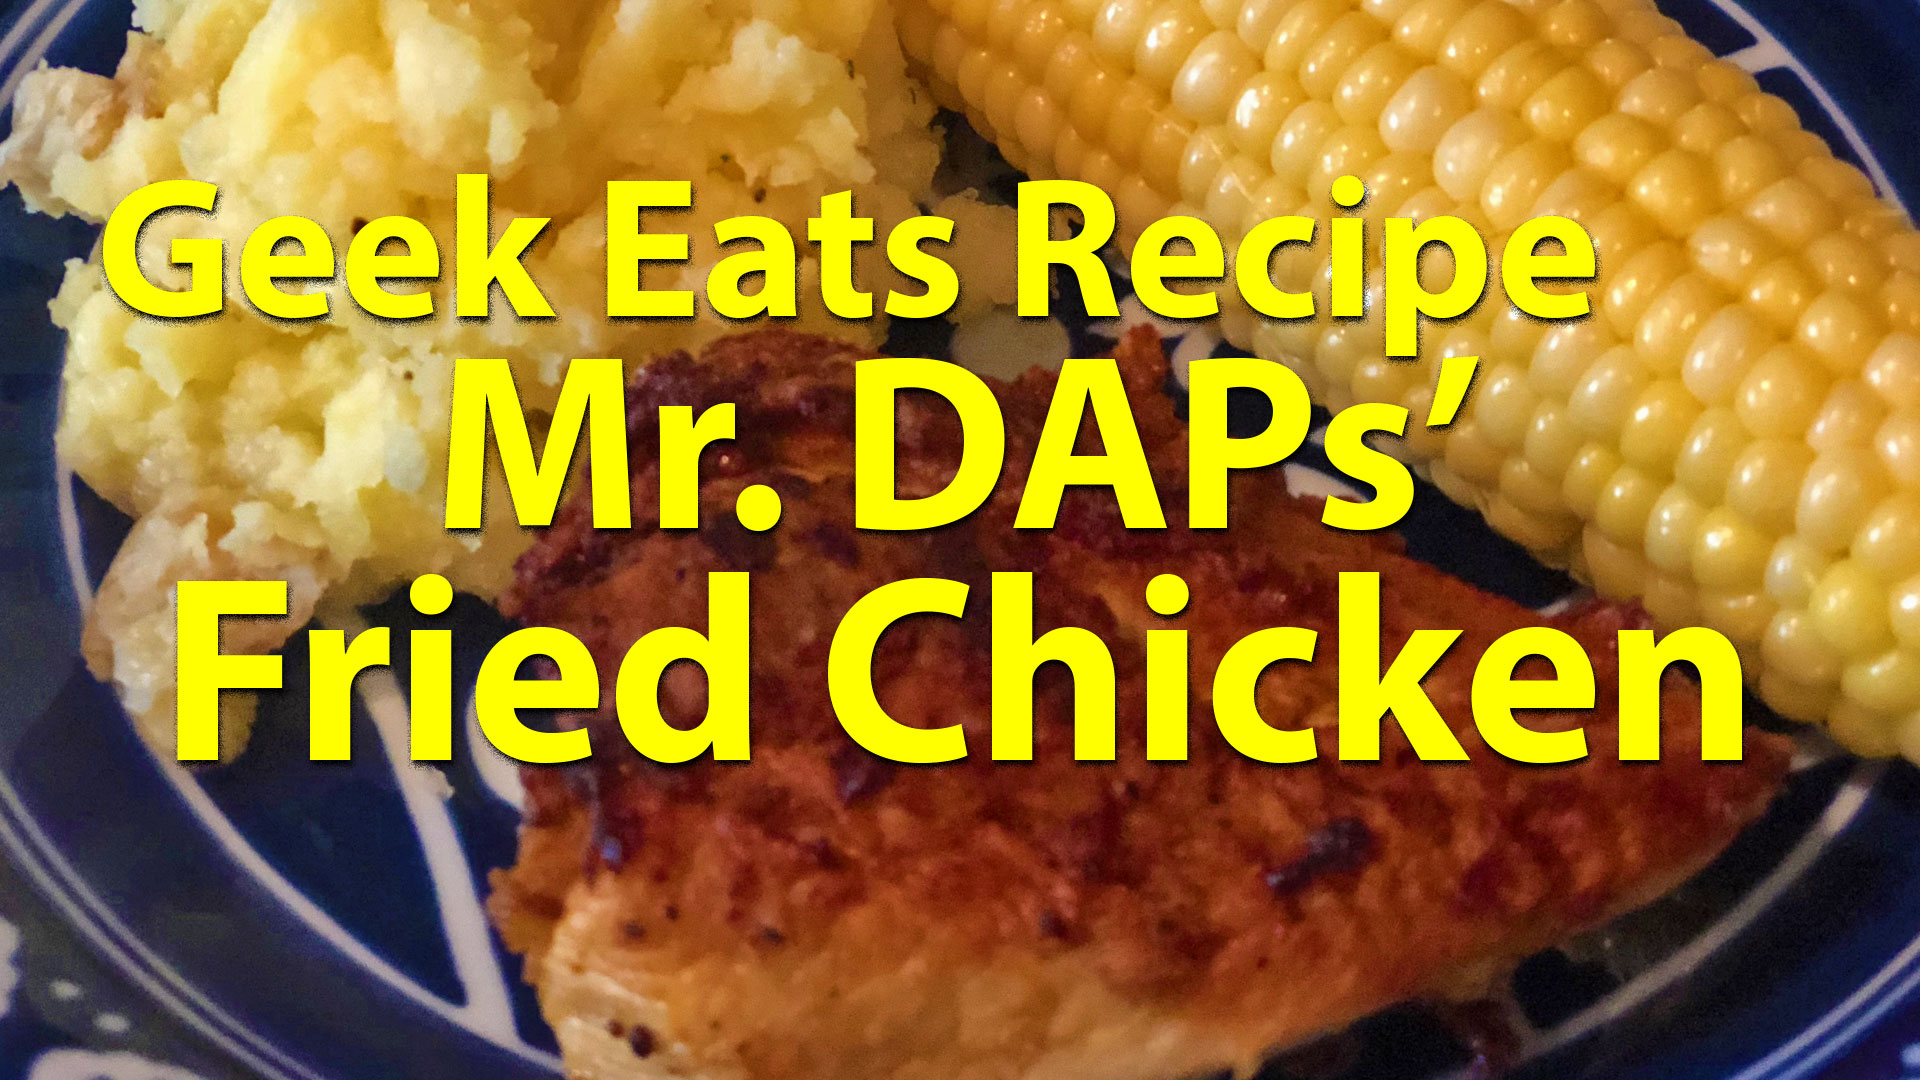 Geek Eats Recipes - Mr. DAPS Fried Chicken